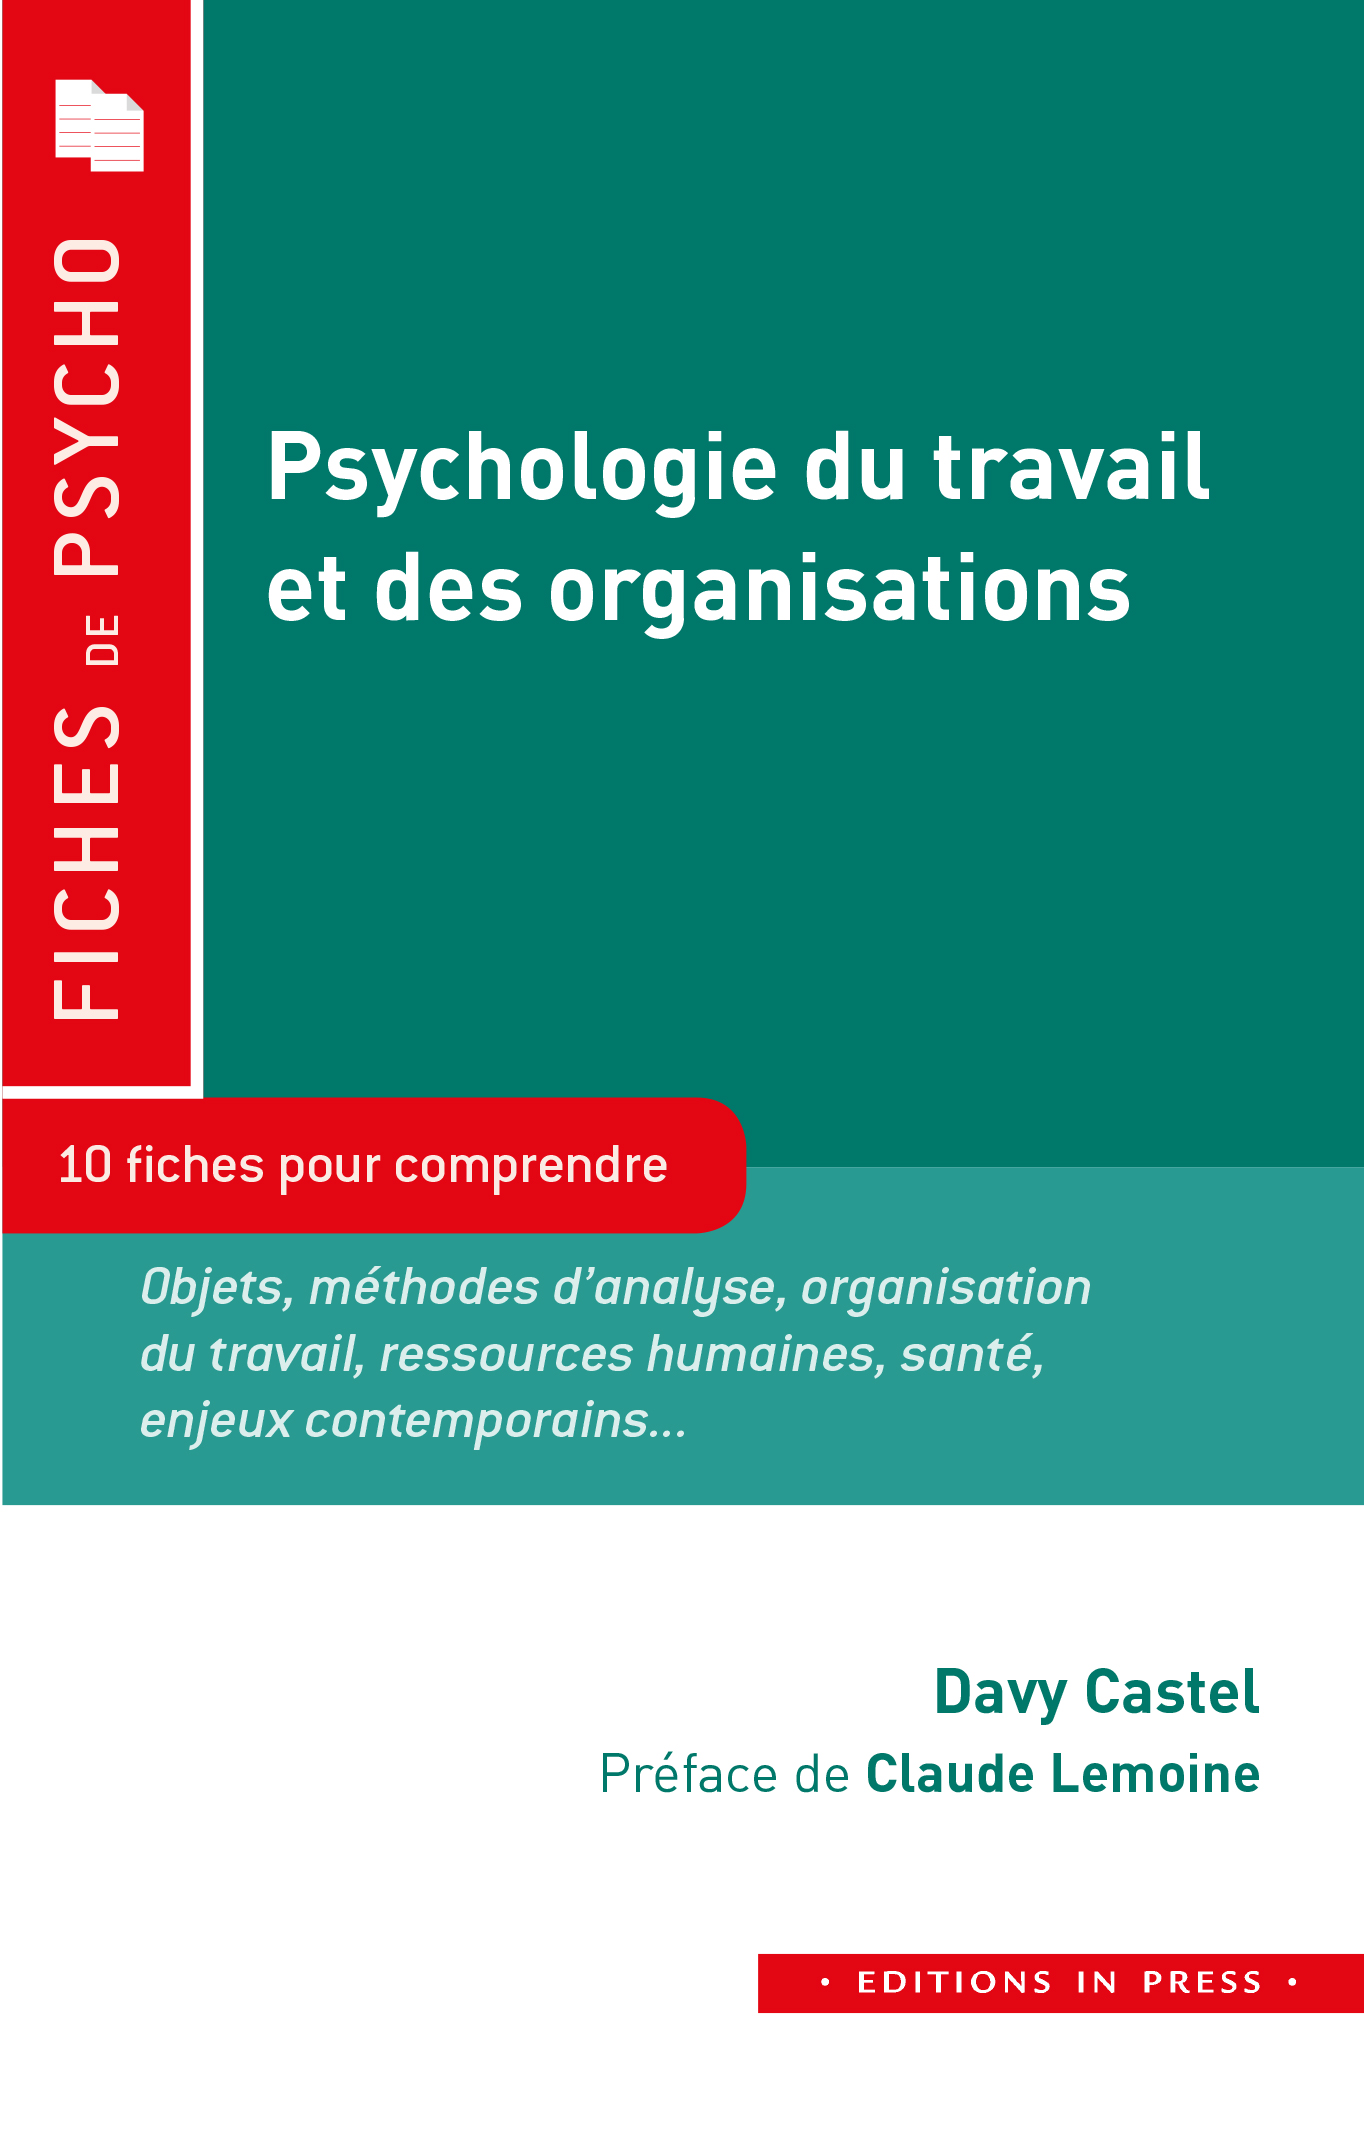  Psychologie du travail et des organisations